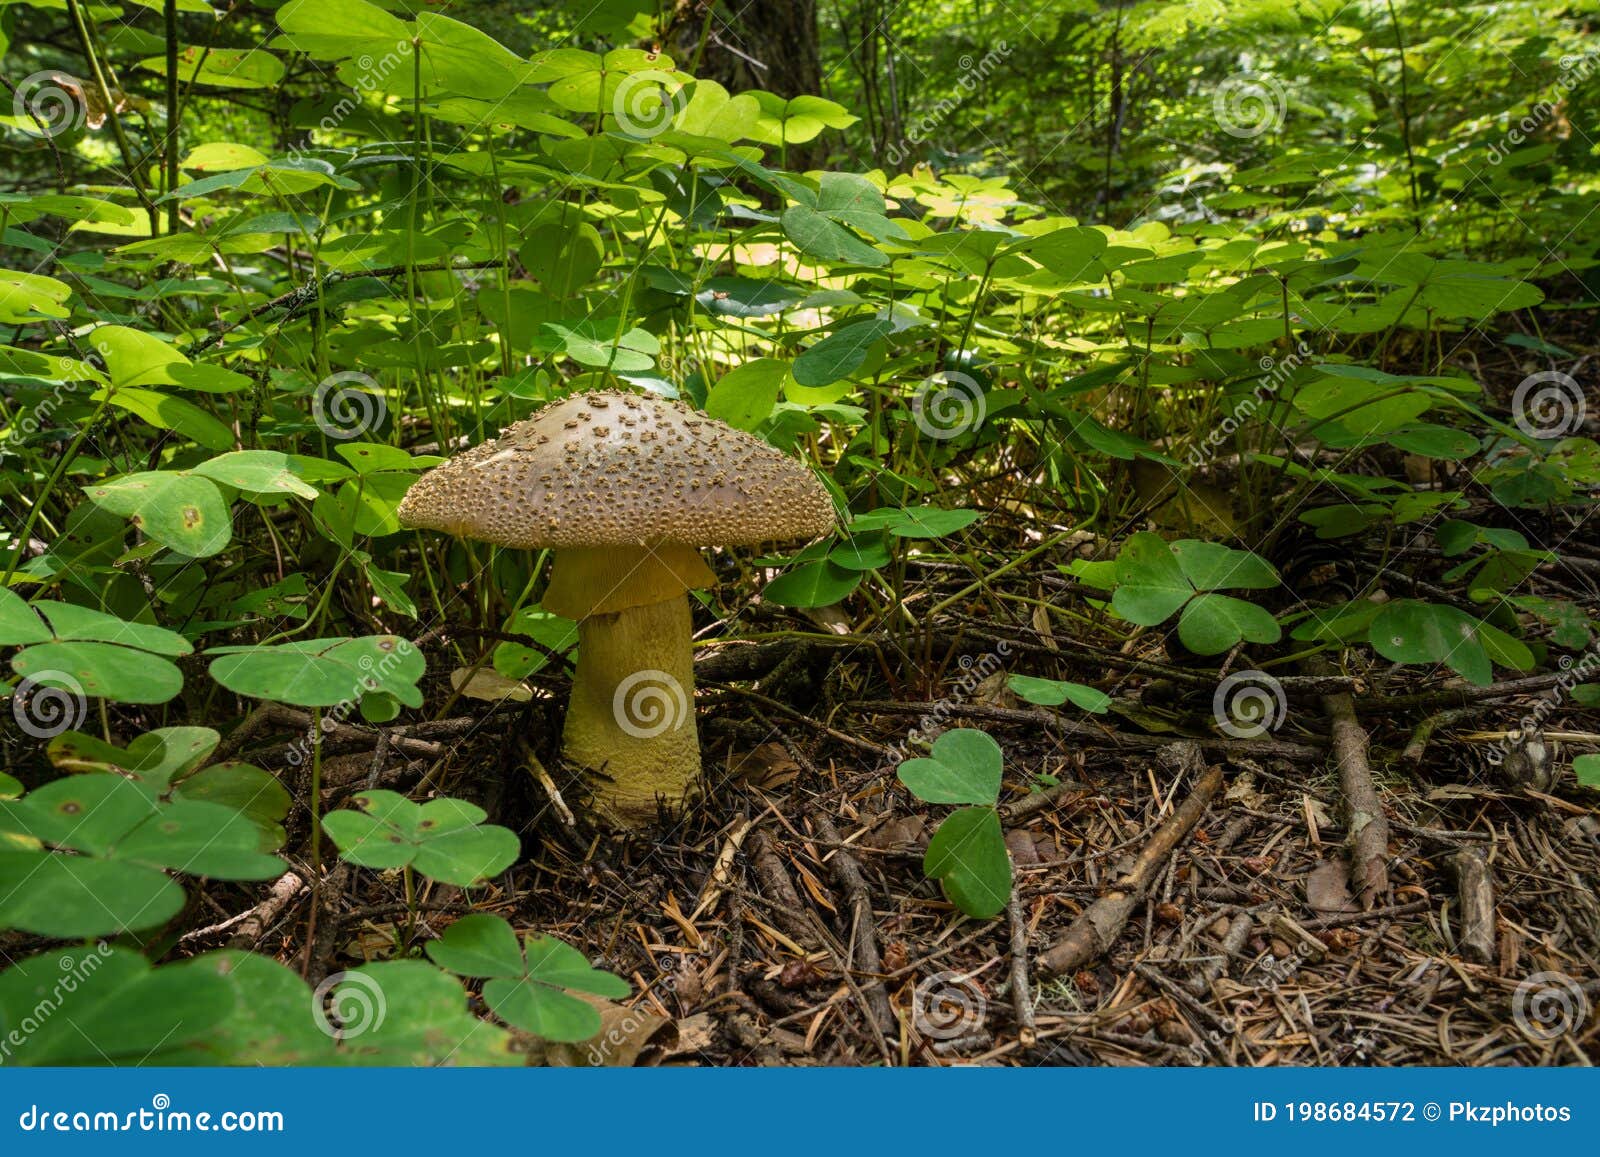 mushroom and oxalis